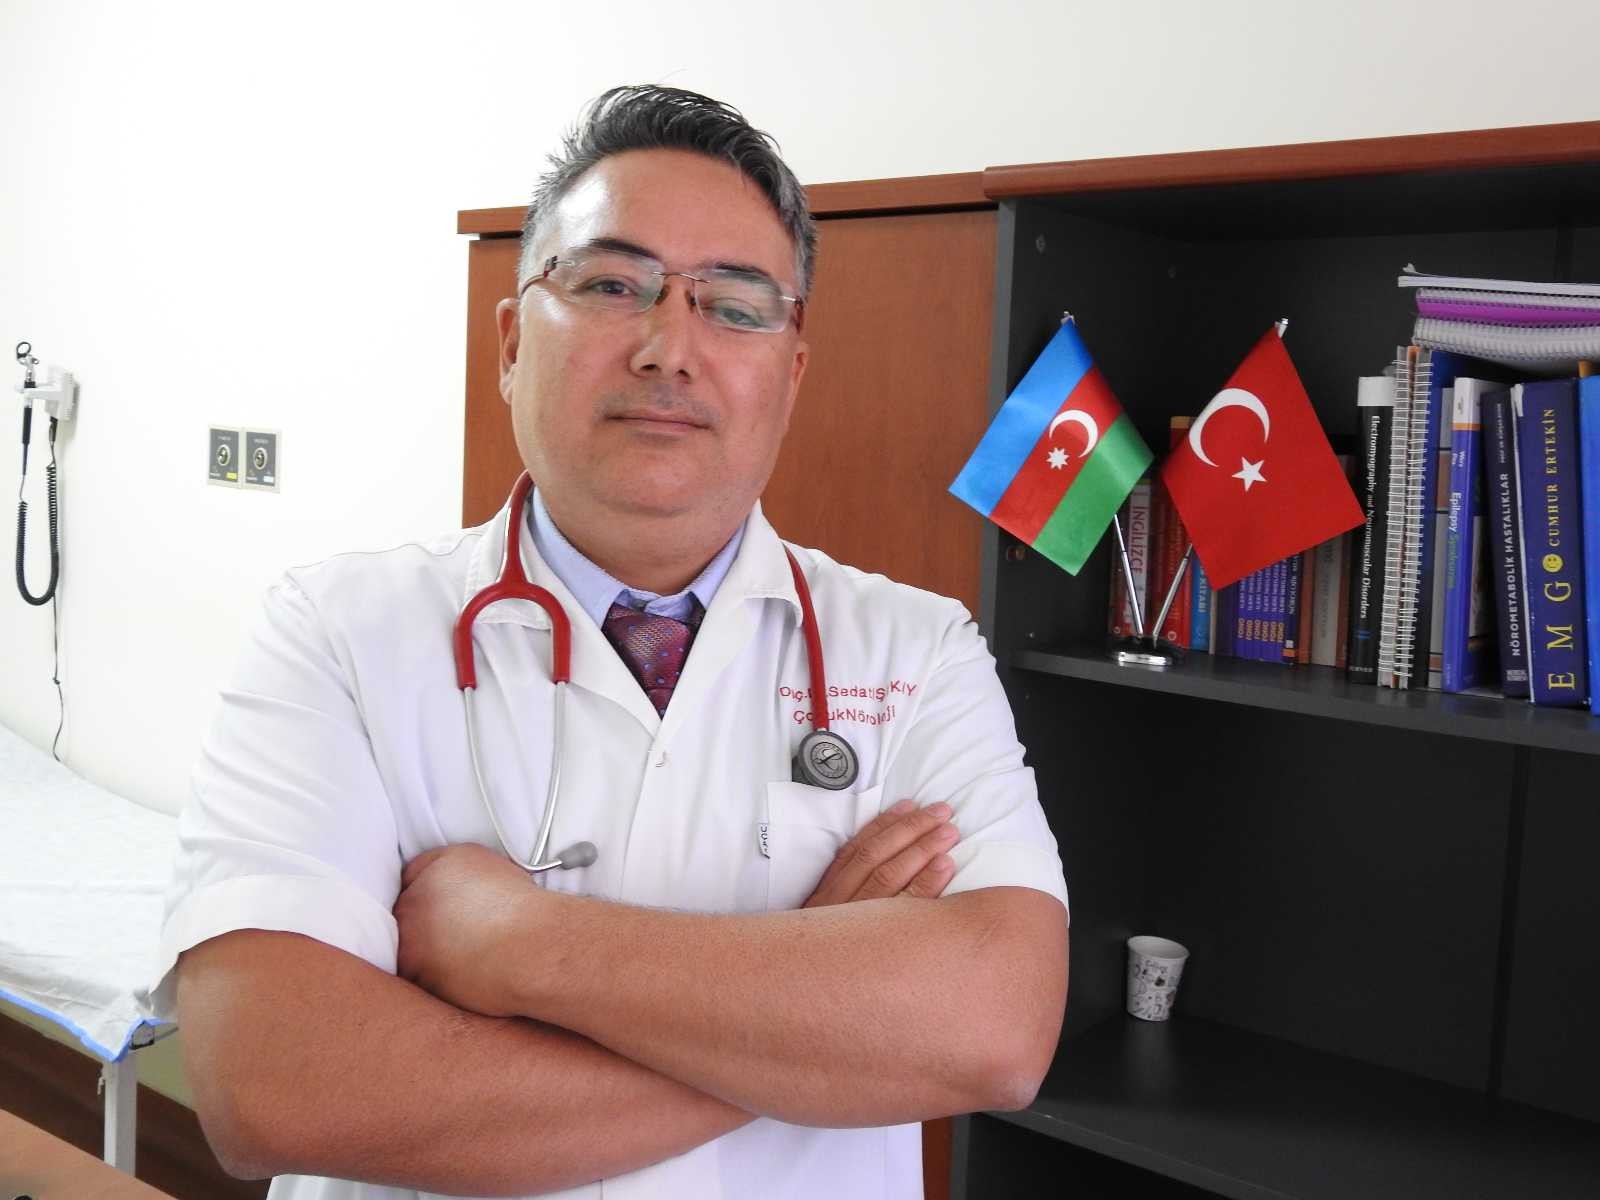 Türk doktorun keşfettiği hastalık tıp literatürüne soyismiyle kaydedildi #gaziantep